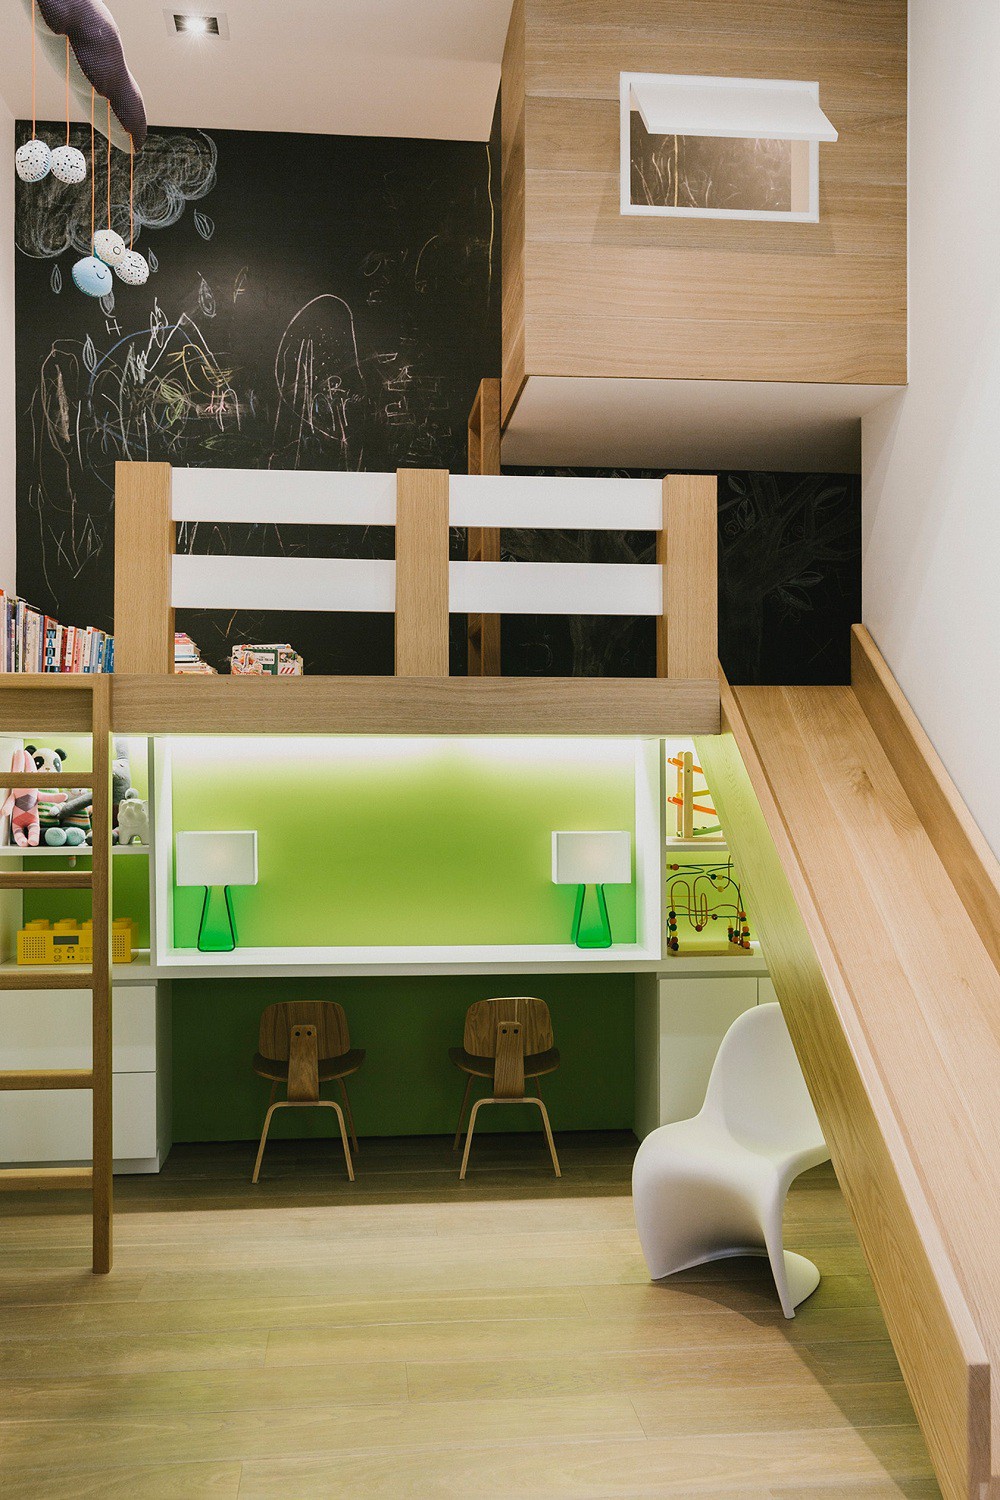 Thiết kế không gian đa chức năng thông minh cho những căn hộ chung cư có diện tích nhỏ - Ảnh 4.